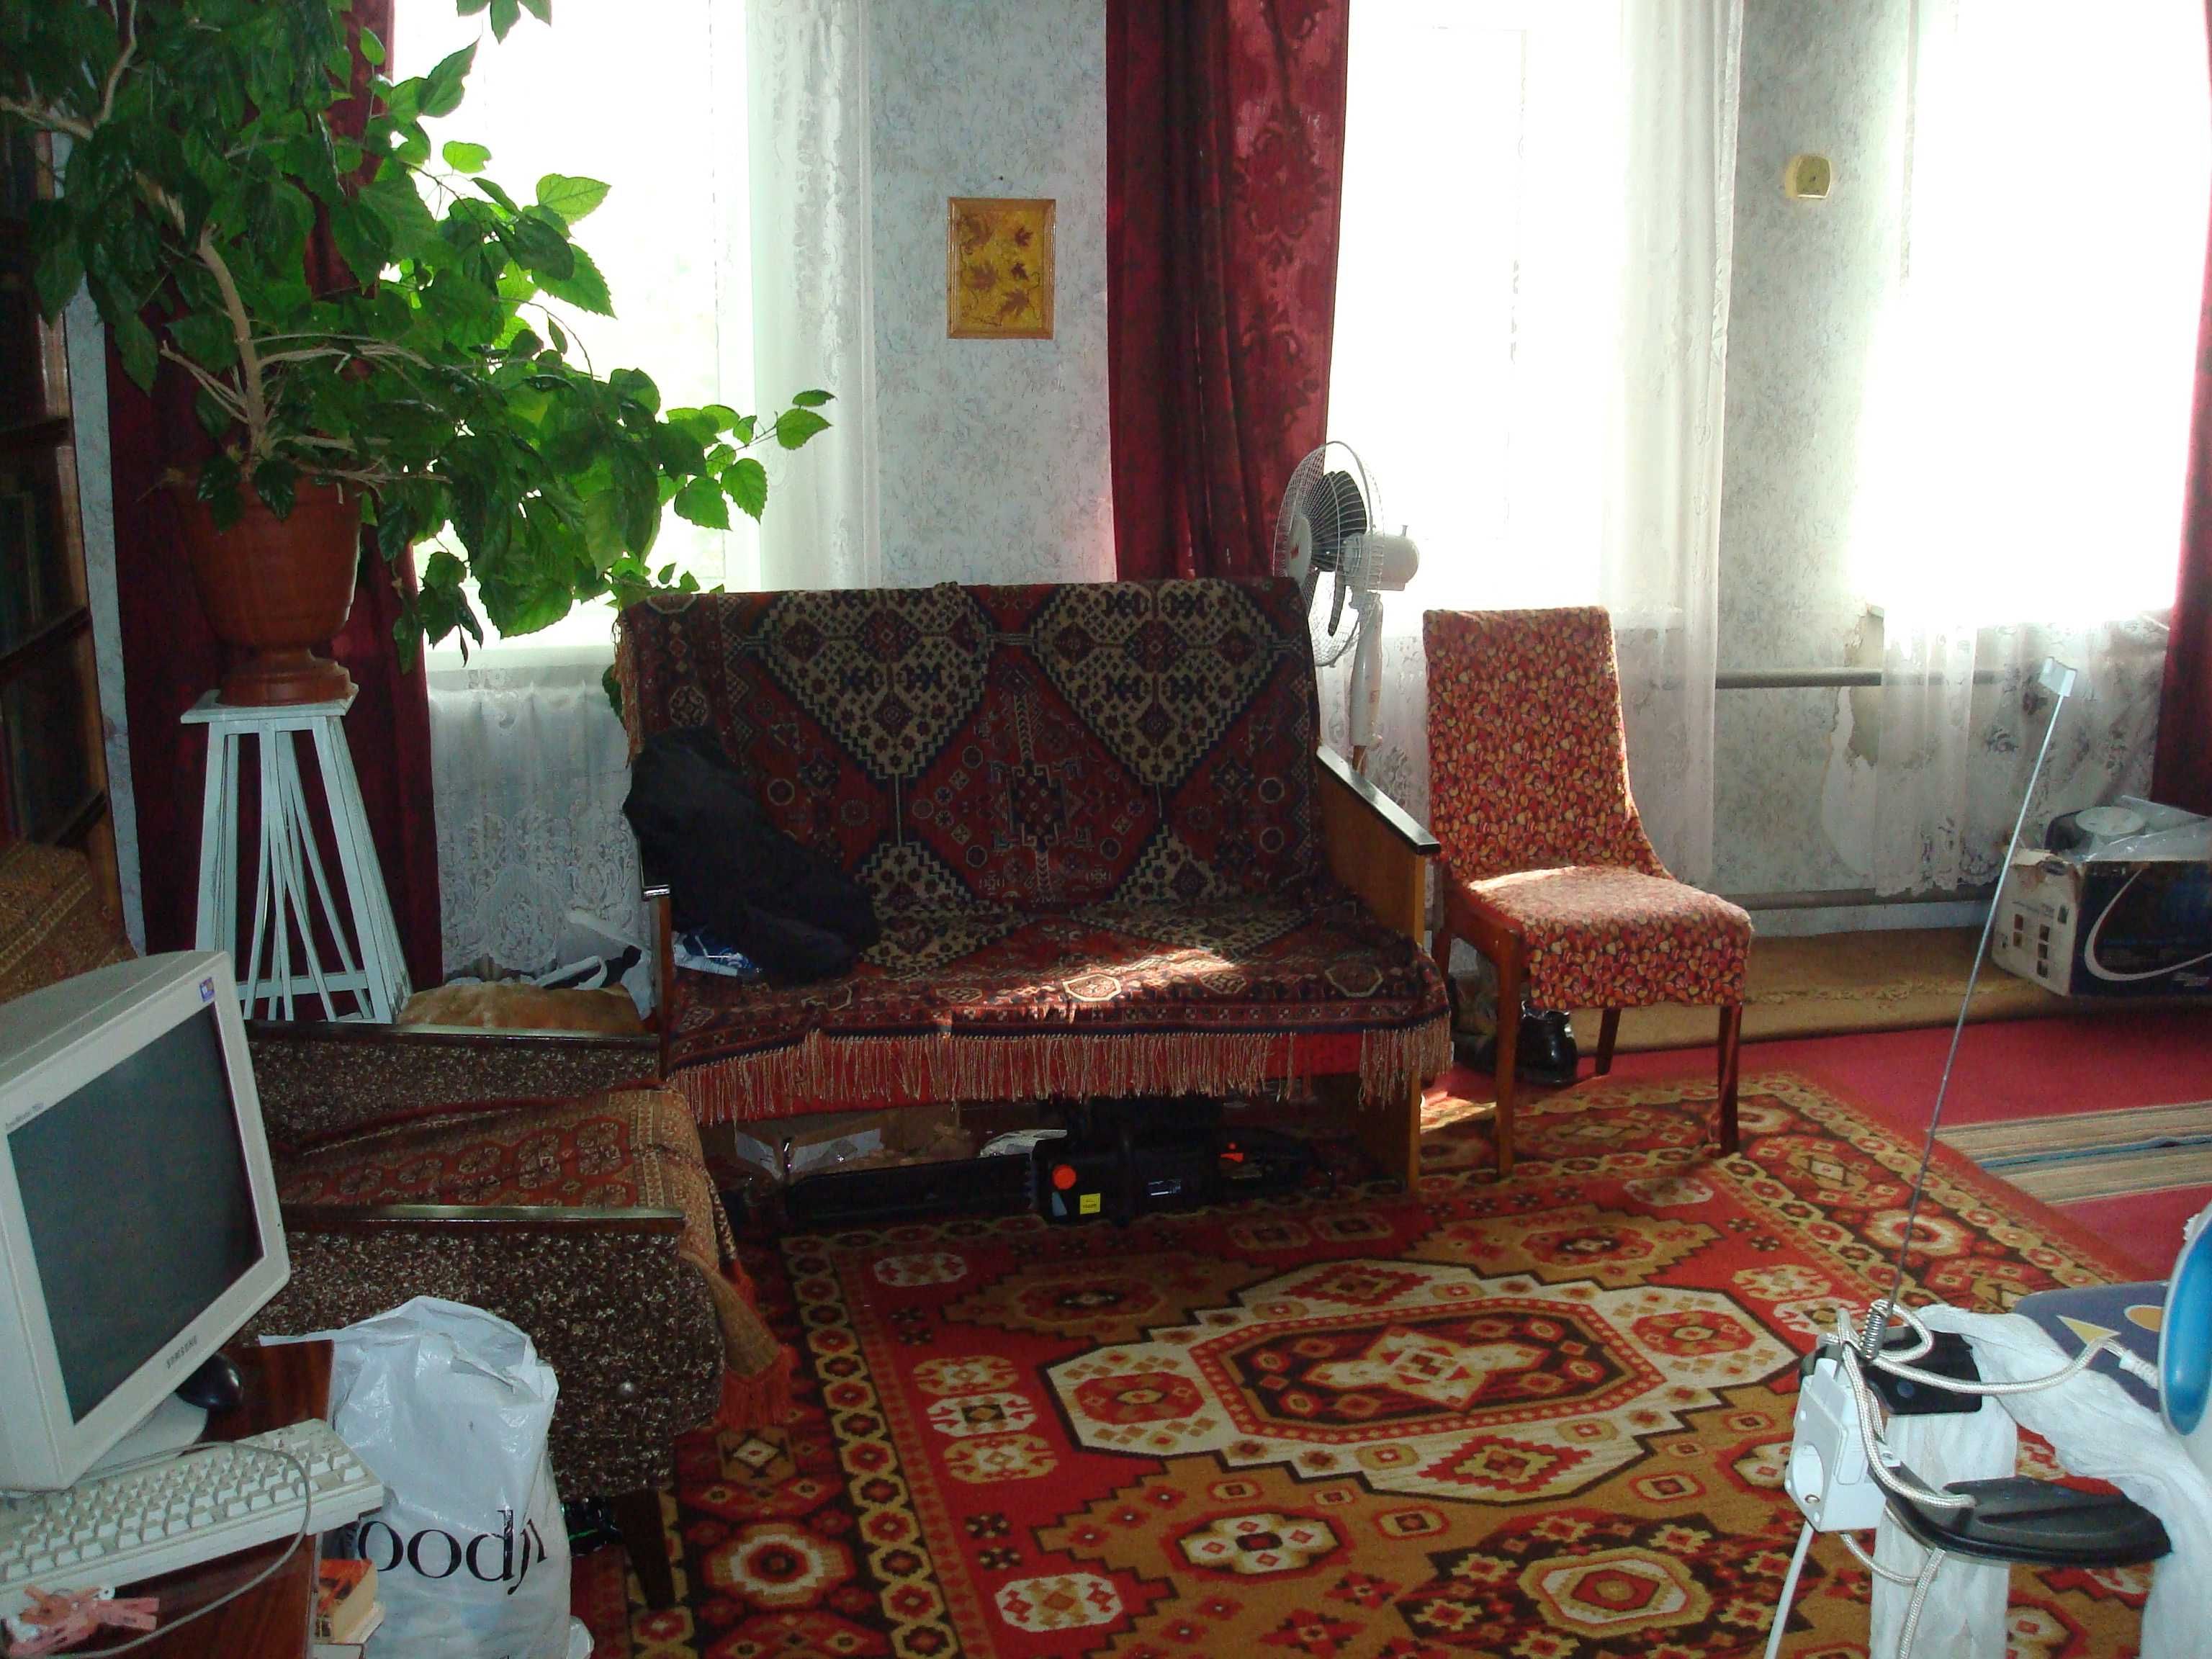 Продаж ВЕЛИКОГО будинку в центральній частині м. Звенигородка